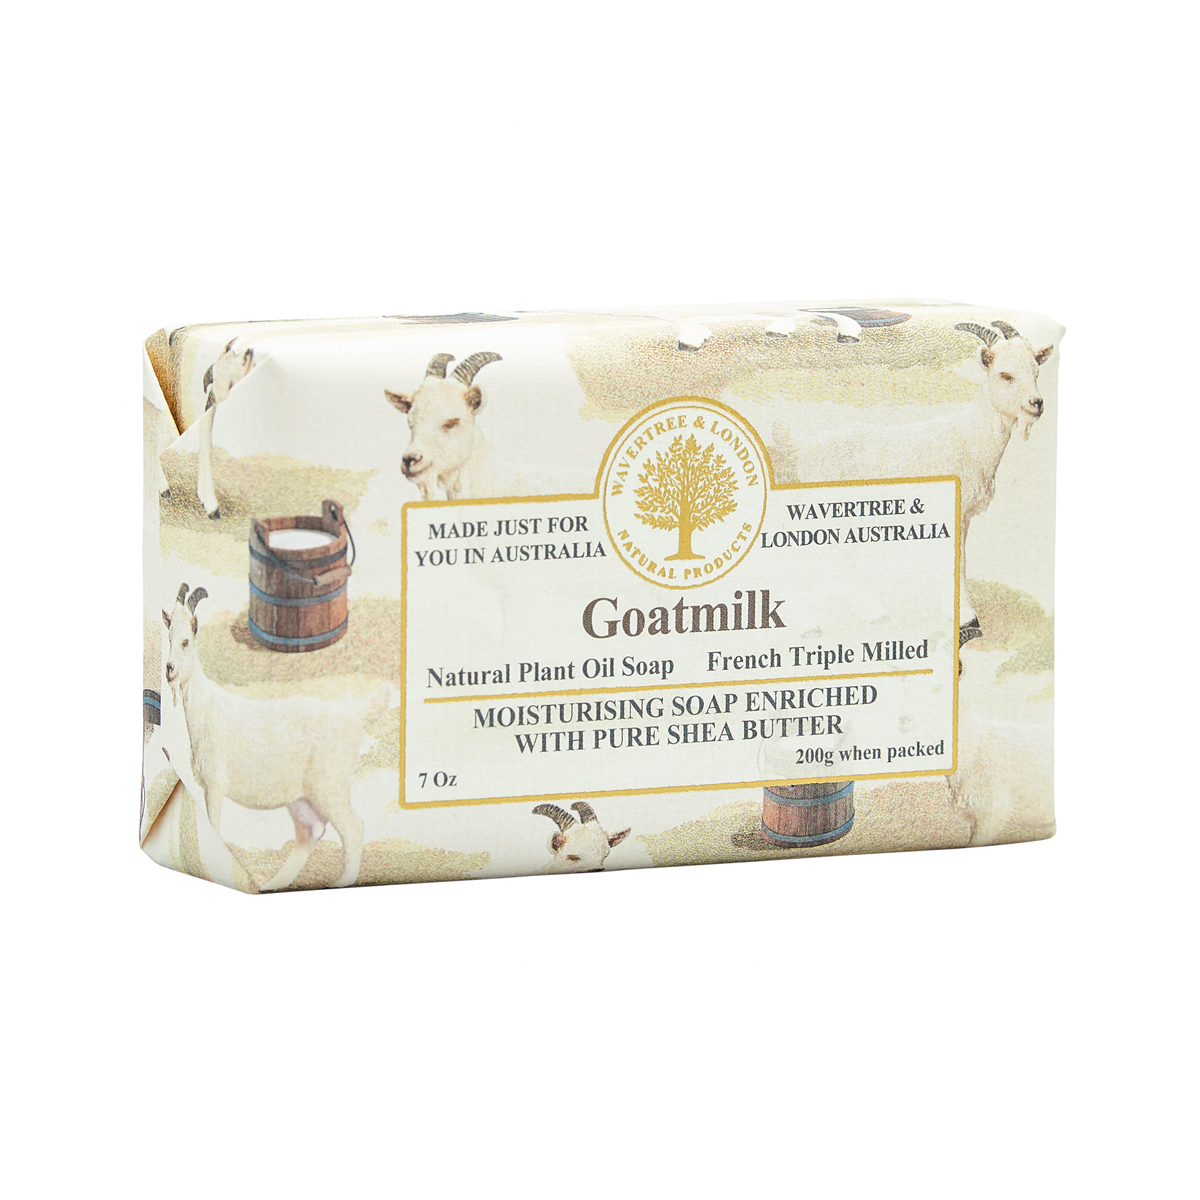 Goatsmilk Soap Bar carton 8x200g - ETA WEEK BEGINNING 11/03